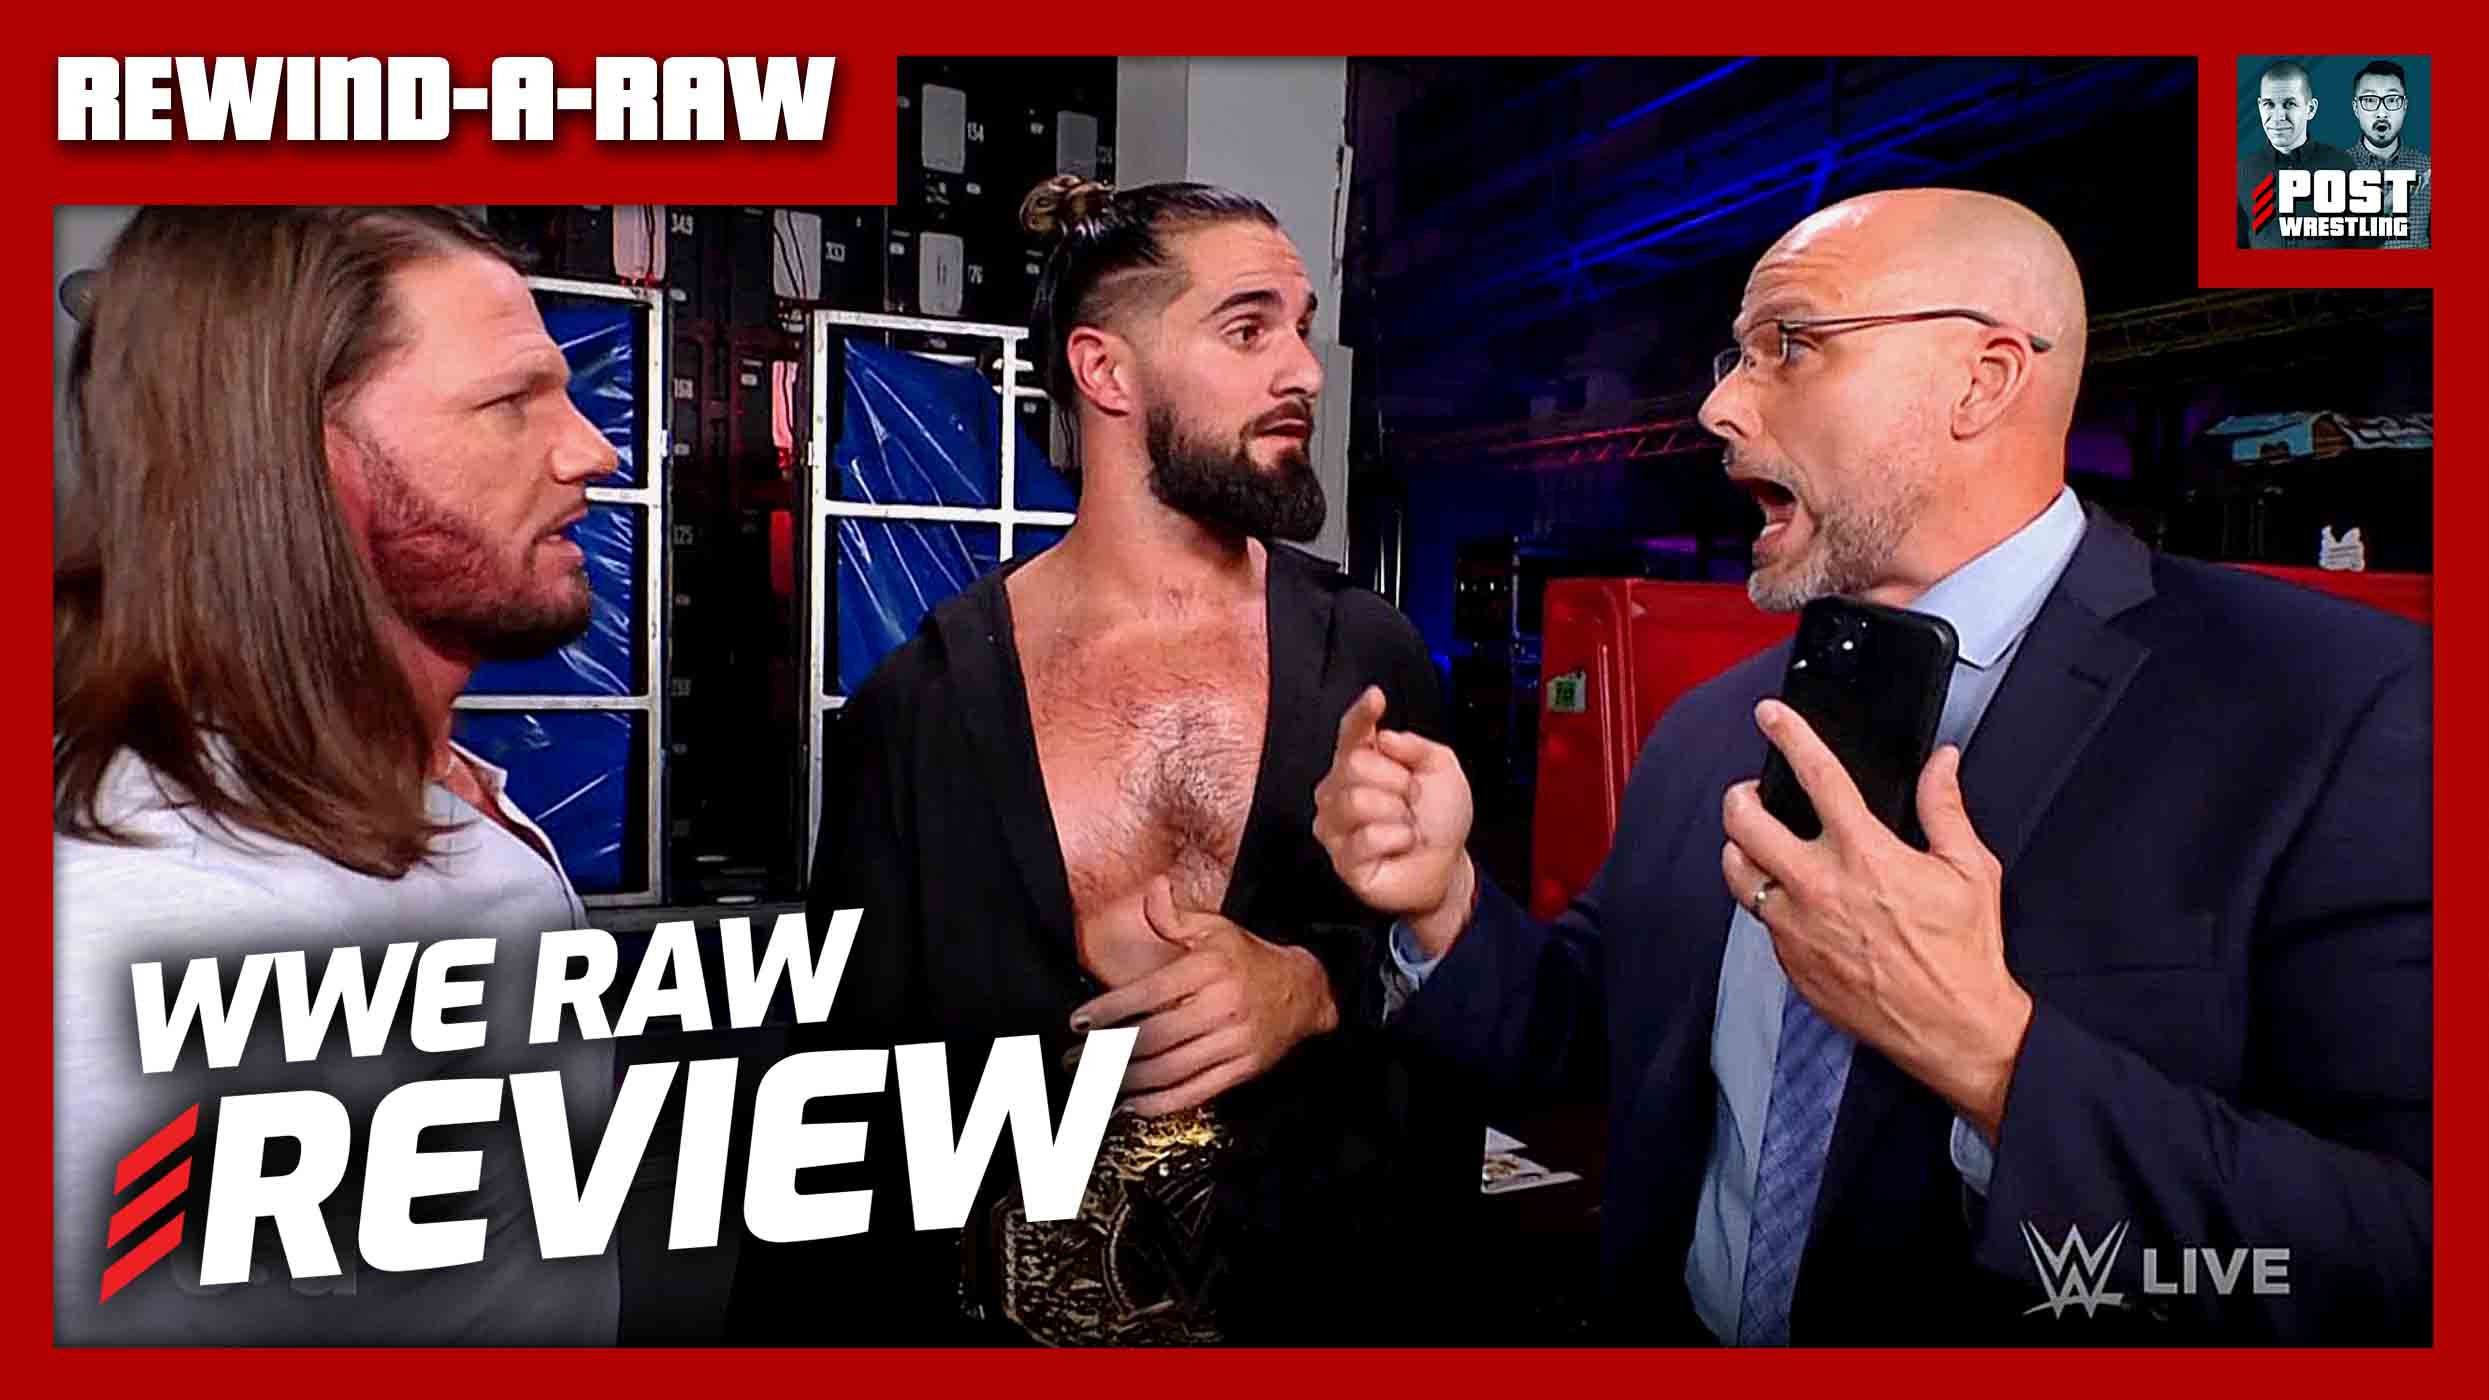 Wwe Raw Review Rewind A Raw Post Wrestling Wwe Aew Nxt Njpw Podcasts News Reviews